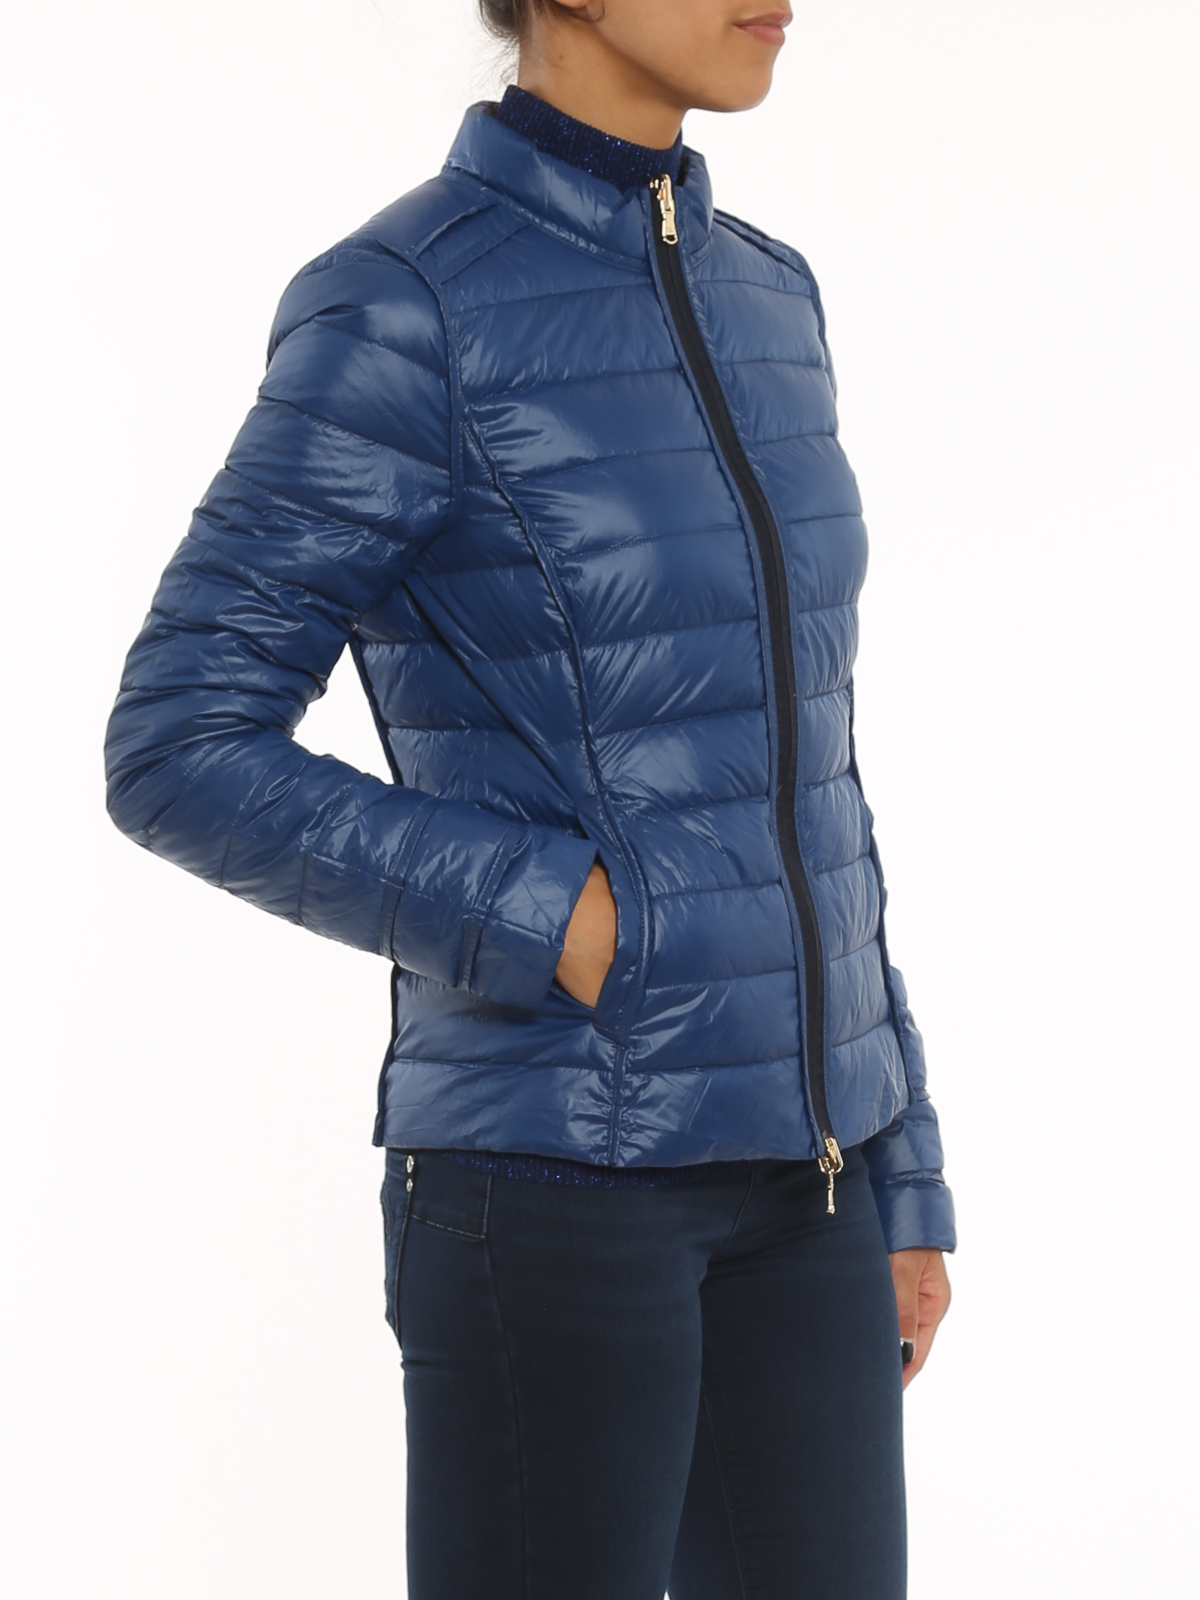 Armani Exchange - Glossy Coated Nylon Puffer Jacket, 100% Polyamide, Blue, Size: S